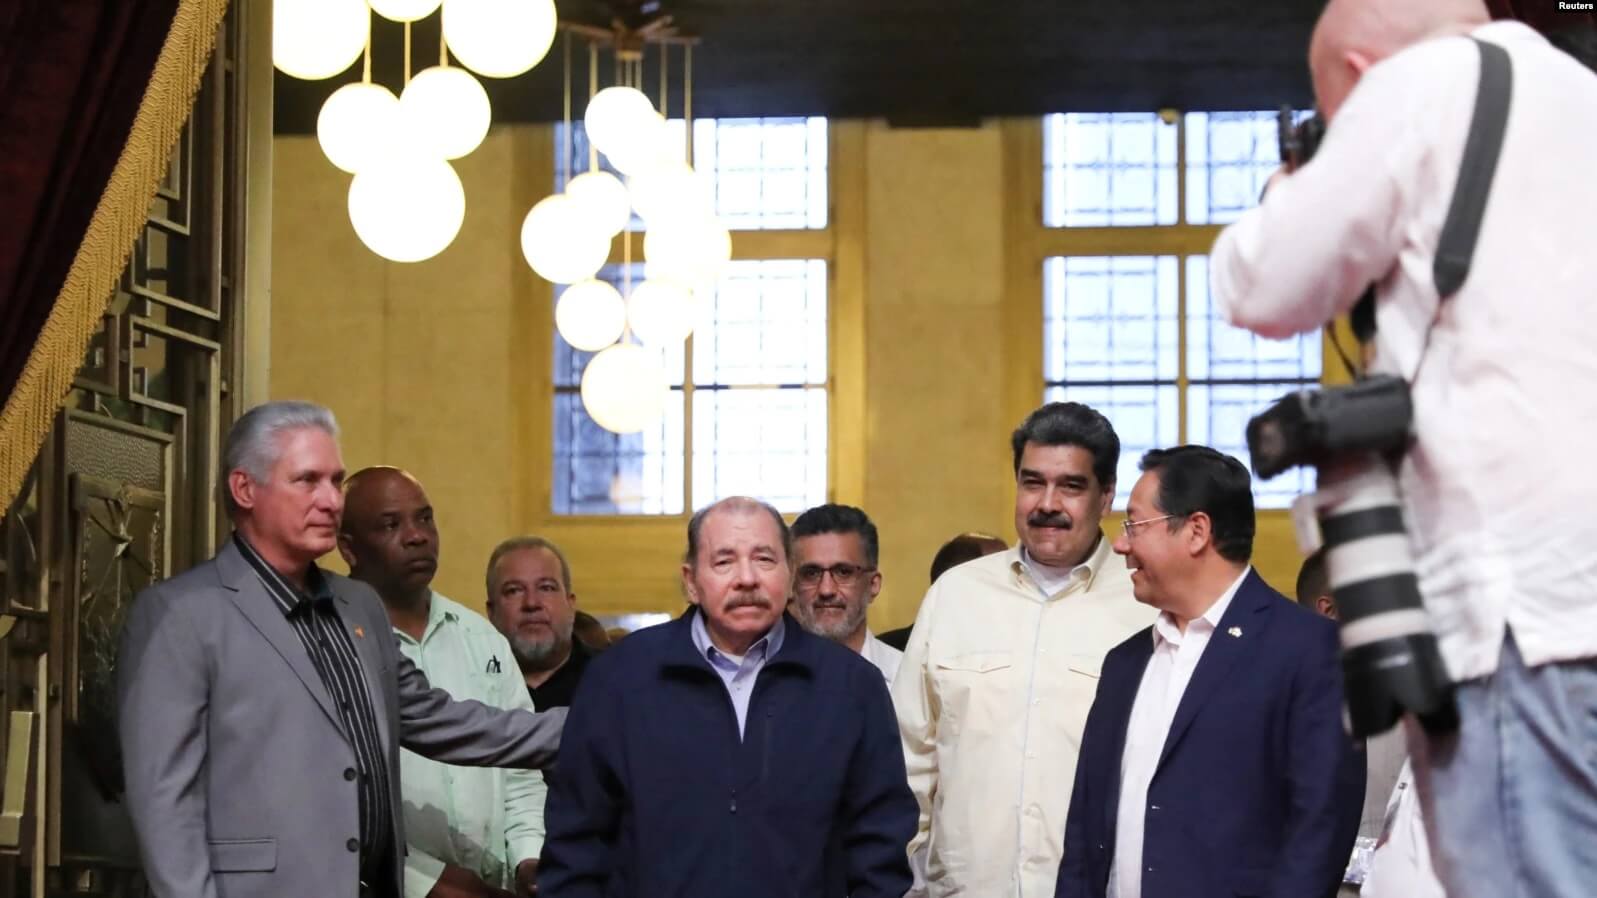 El presidente de Nicaragua, Daniel Ortega, al centro, llega al Palacio de la Revolución para asistir a una reunión con representantes del grupo ALBA en La Habana, Cuba, el 14 de diciembre de 2022. Cortesía del Palacio de Miraflores/ Vía REUTERS.